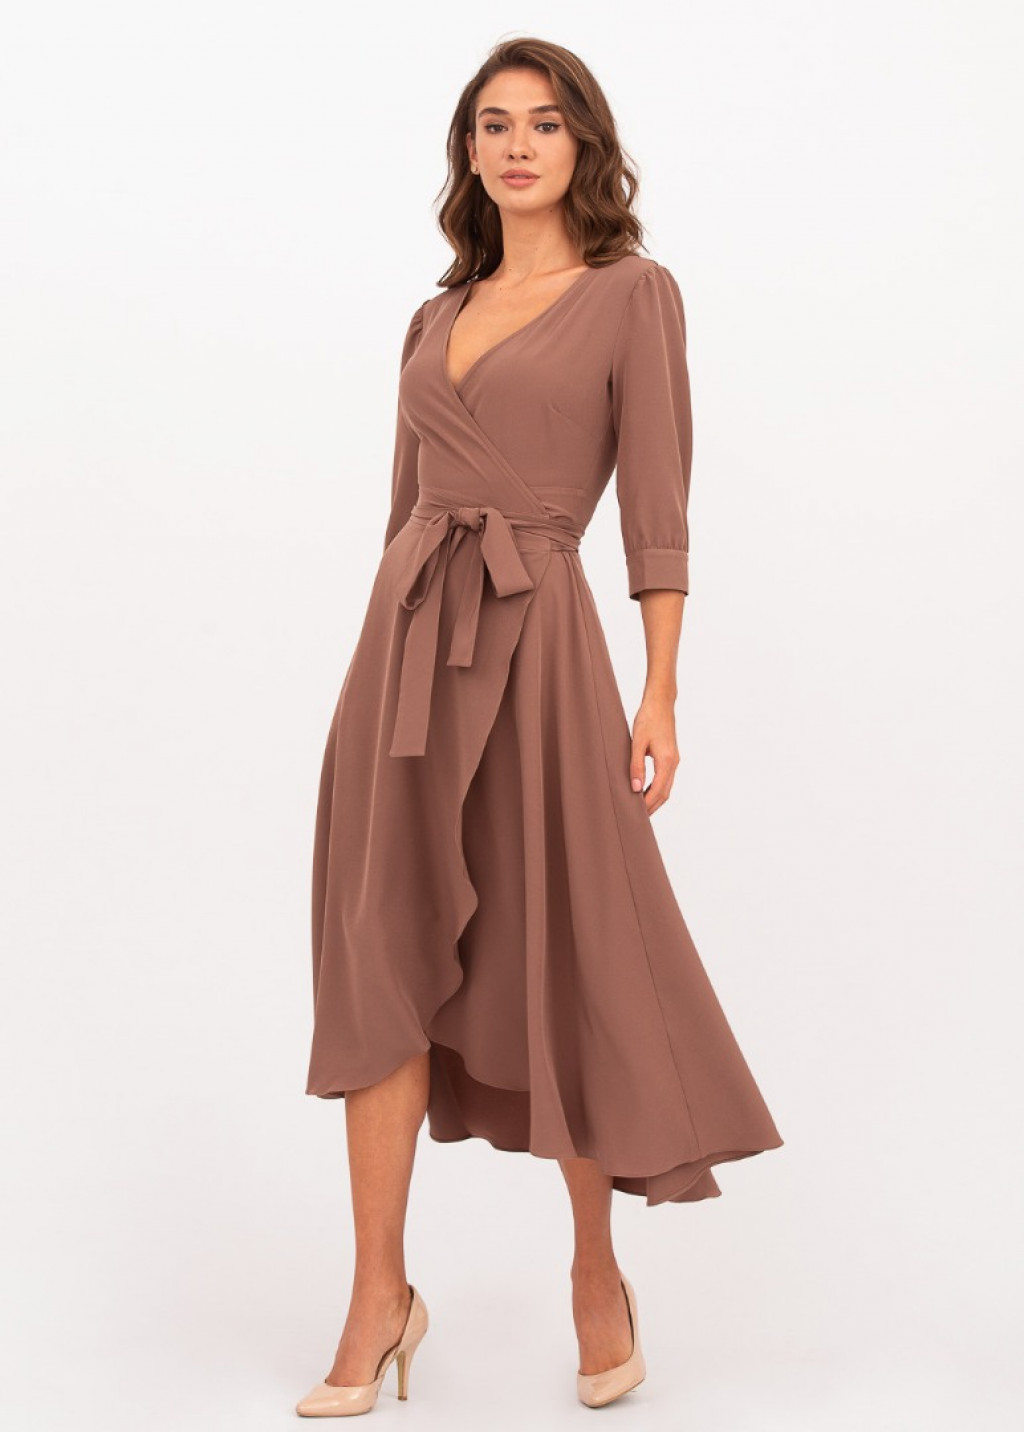 Brown wrap dress